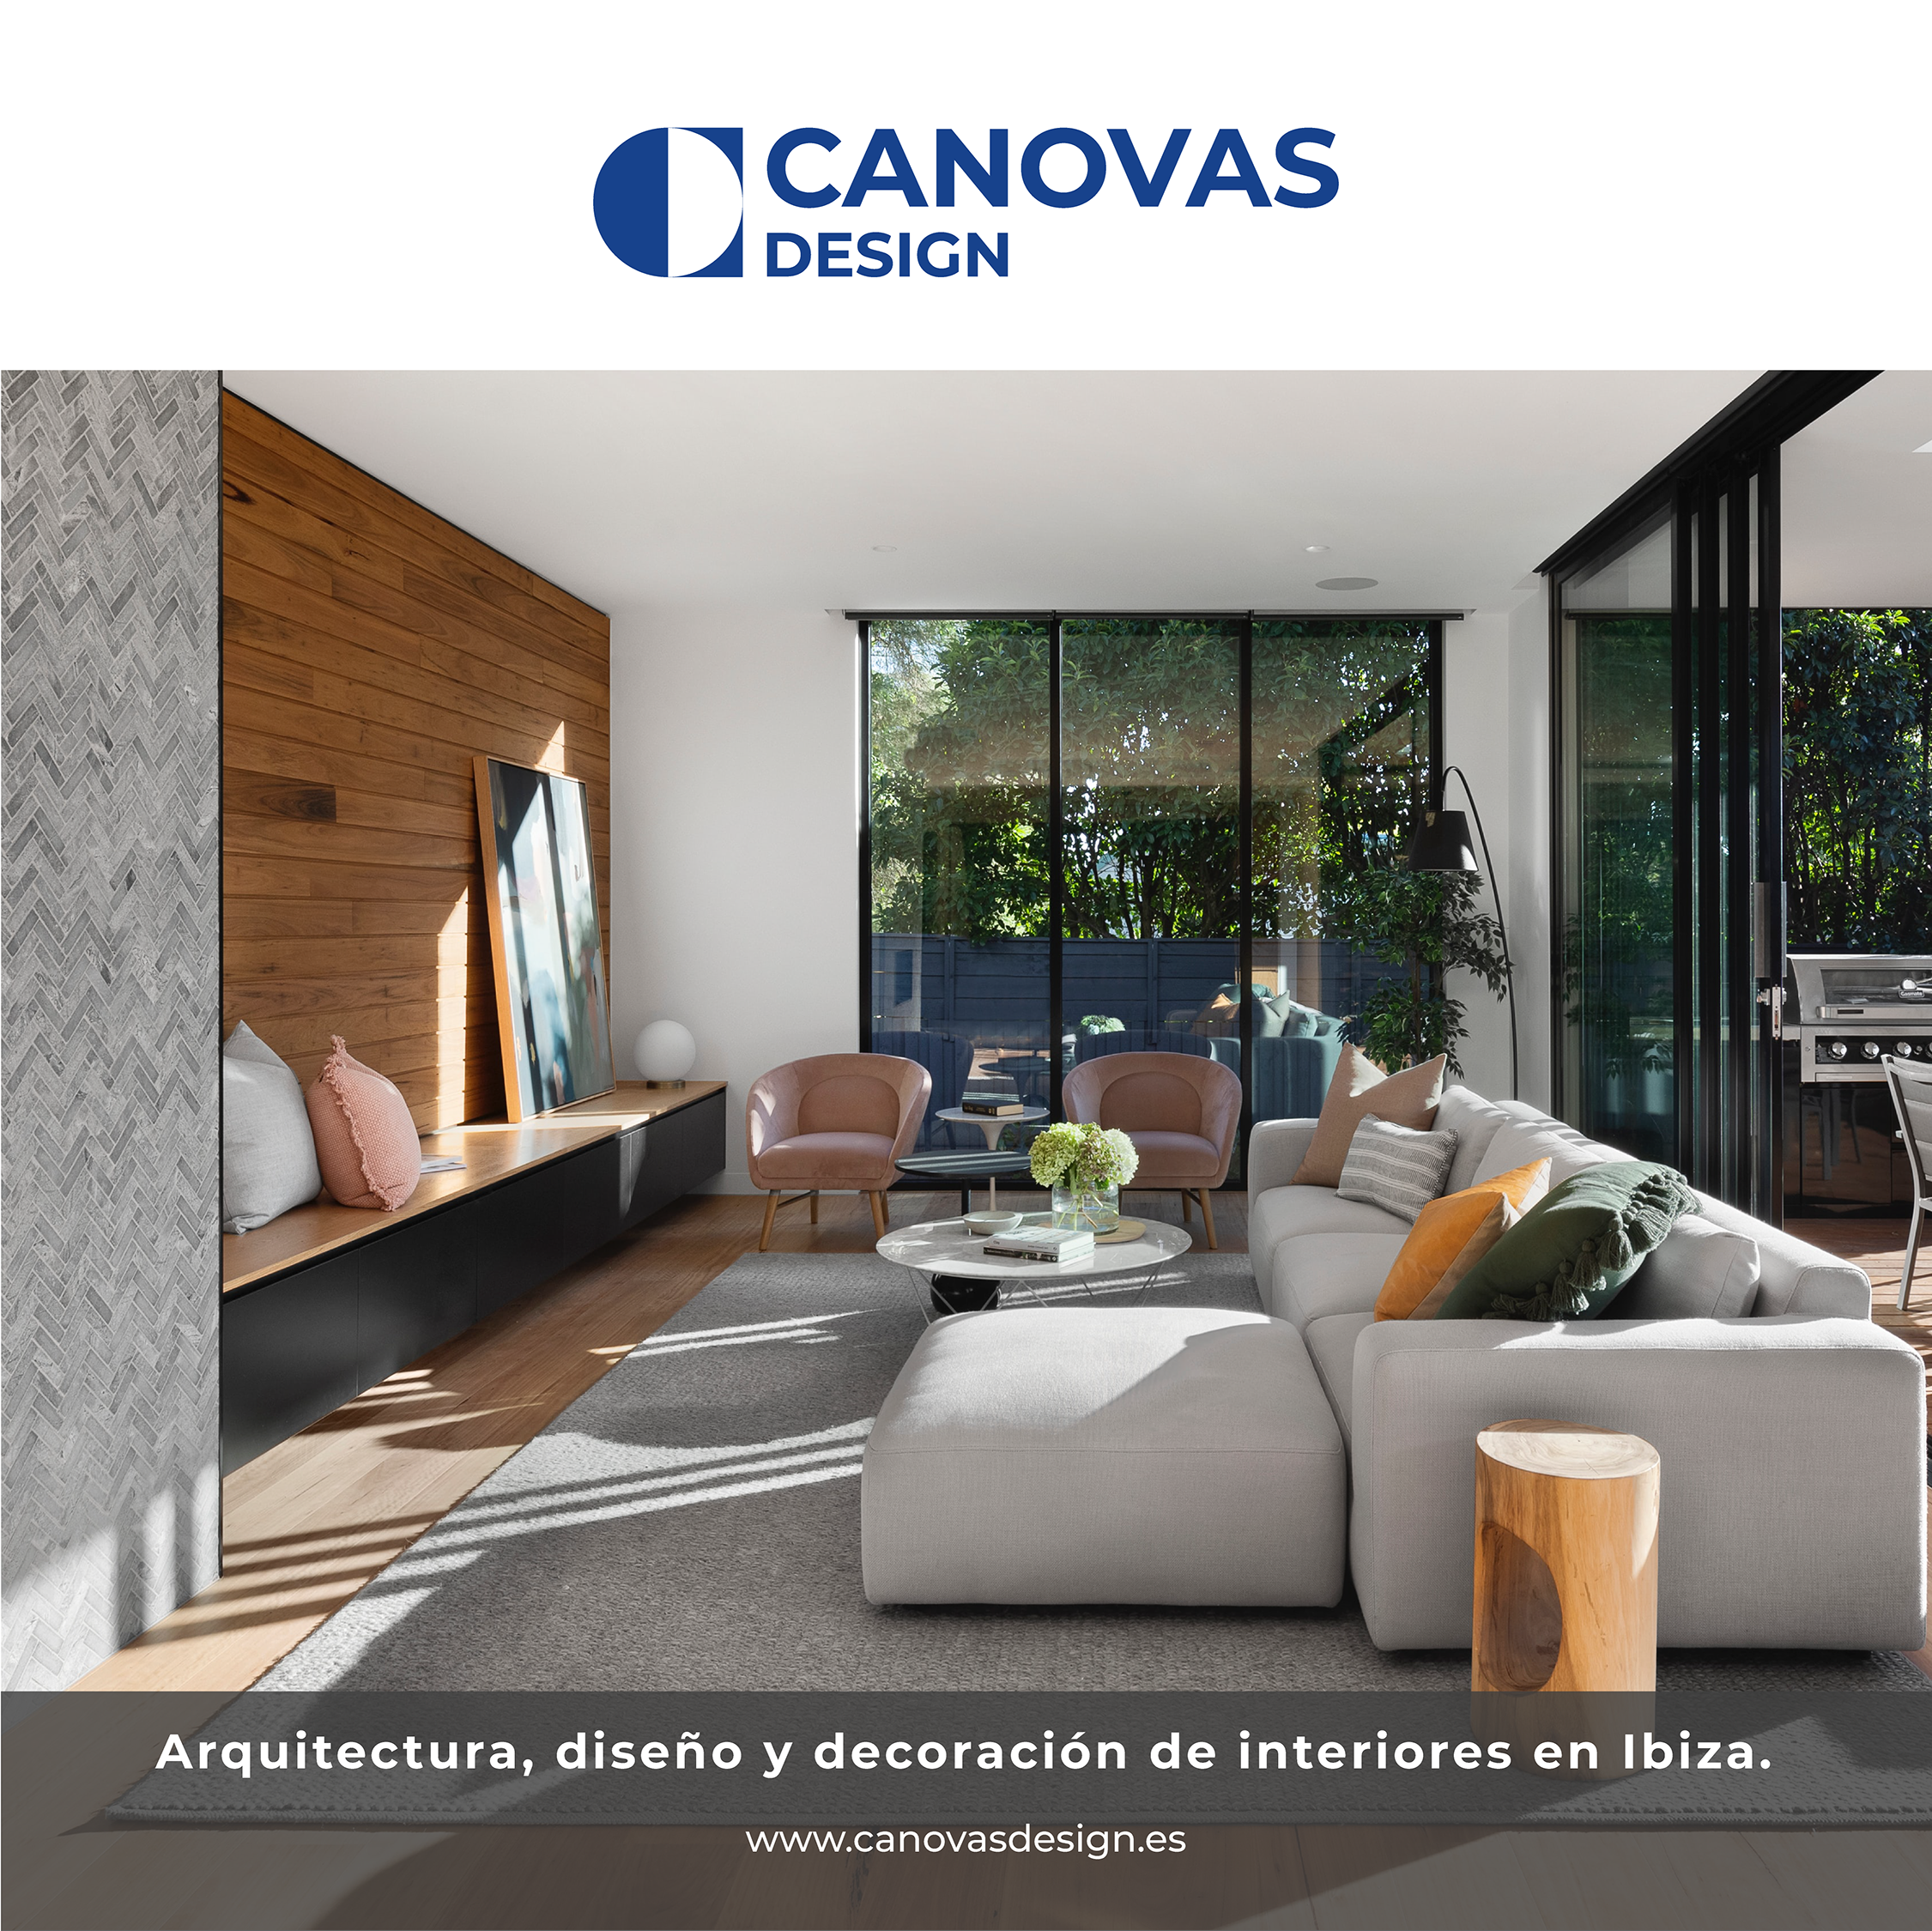 YCANOVAS

4 DESIGN

 

Arquitectura, disefio y decoraciéon de interiores en Ibiza.

www.canovasdesign.es